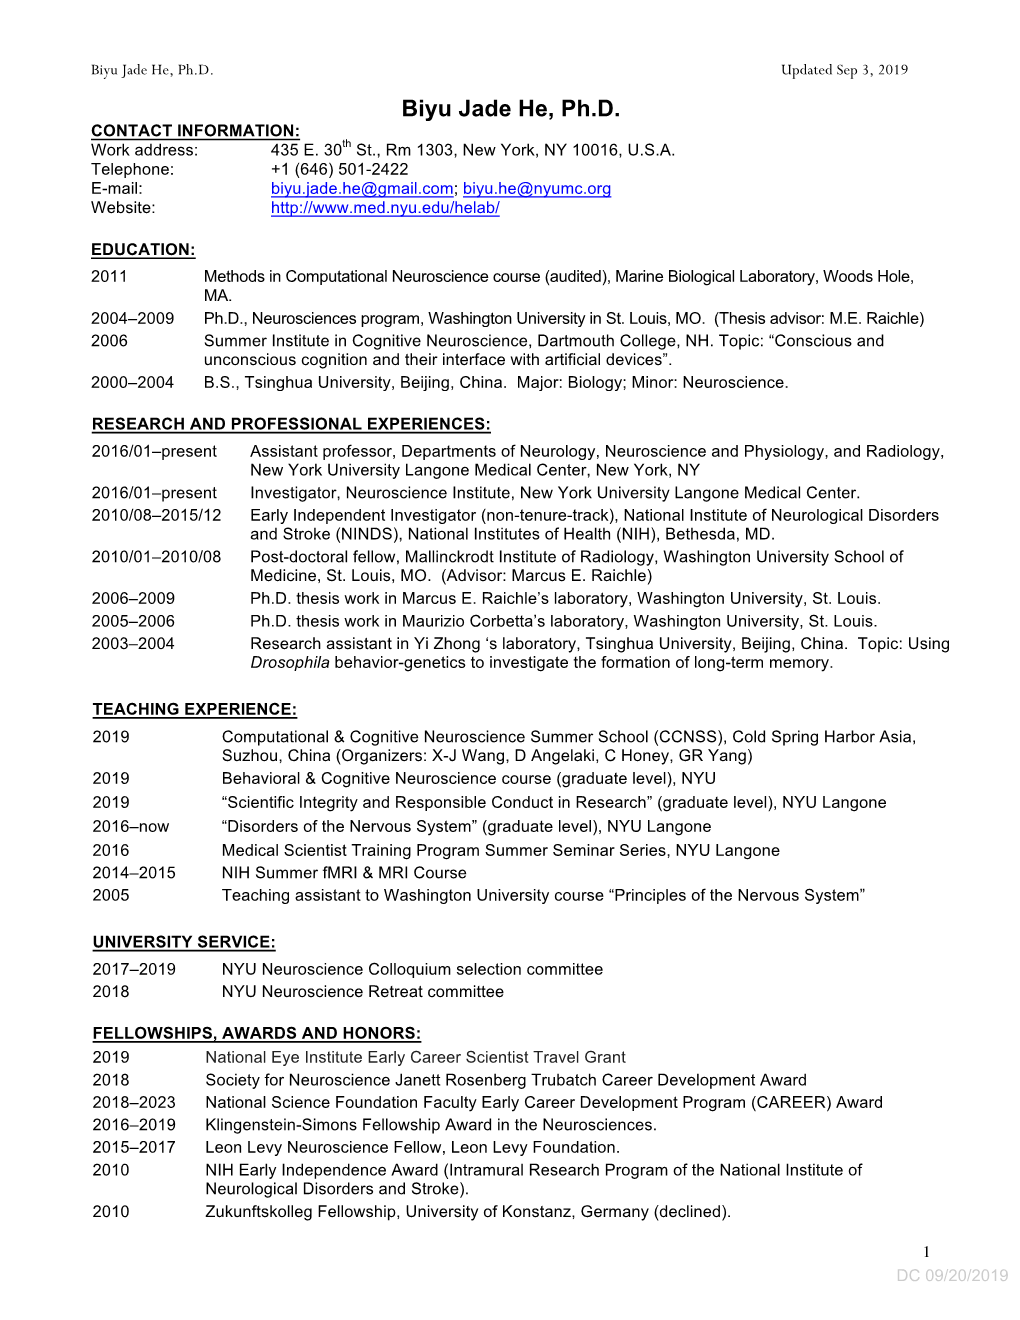 CV for Biyu Jade He, Ph.D